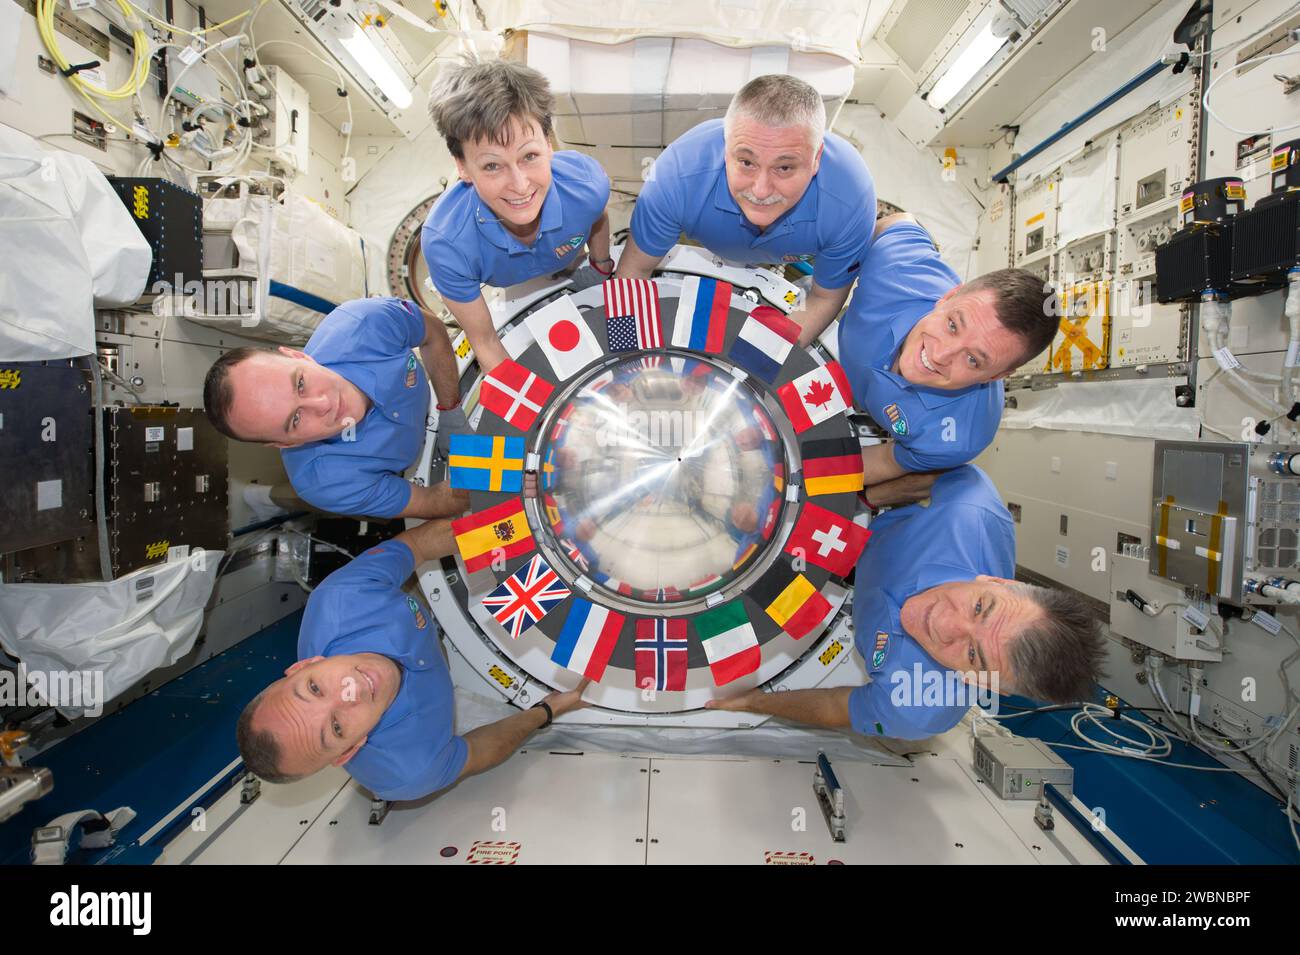 Iss052e031832 (8/5/2017) --- l'equipaggio della Expedition 52 posano per il loro ritratto in orbita dell'equipaggio riunito intorno alla camera d'aria interna del modulo JEM (Japanese Experiment Module) a bordo della stazione spaziale Internazionale (ISS). Le bandiere di tutti i partner internazionali sono visibili intorno al portello della serratura d'aria. Da sinistra a destra: Astronauta Randy Bresnik, cosmonauta Sergey Ryzanskiy, astronauta Peggy Whitson, Cosmonauta Fyodor Yurchikhin, astronauta Jack Fischer e astronauta dell'Agenzia spaziale europea (ESA) Paolo Nespoli. Foto Stock